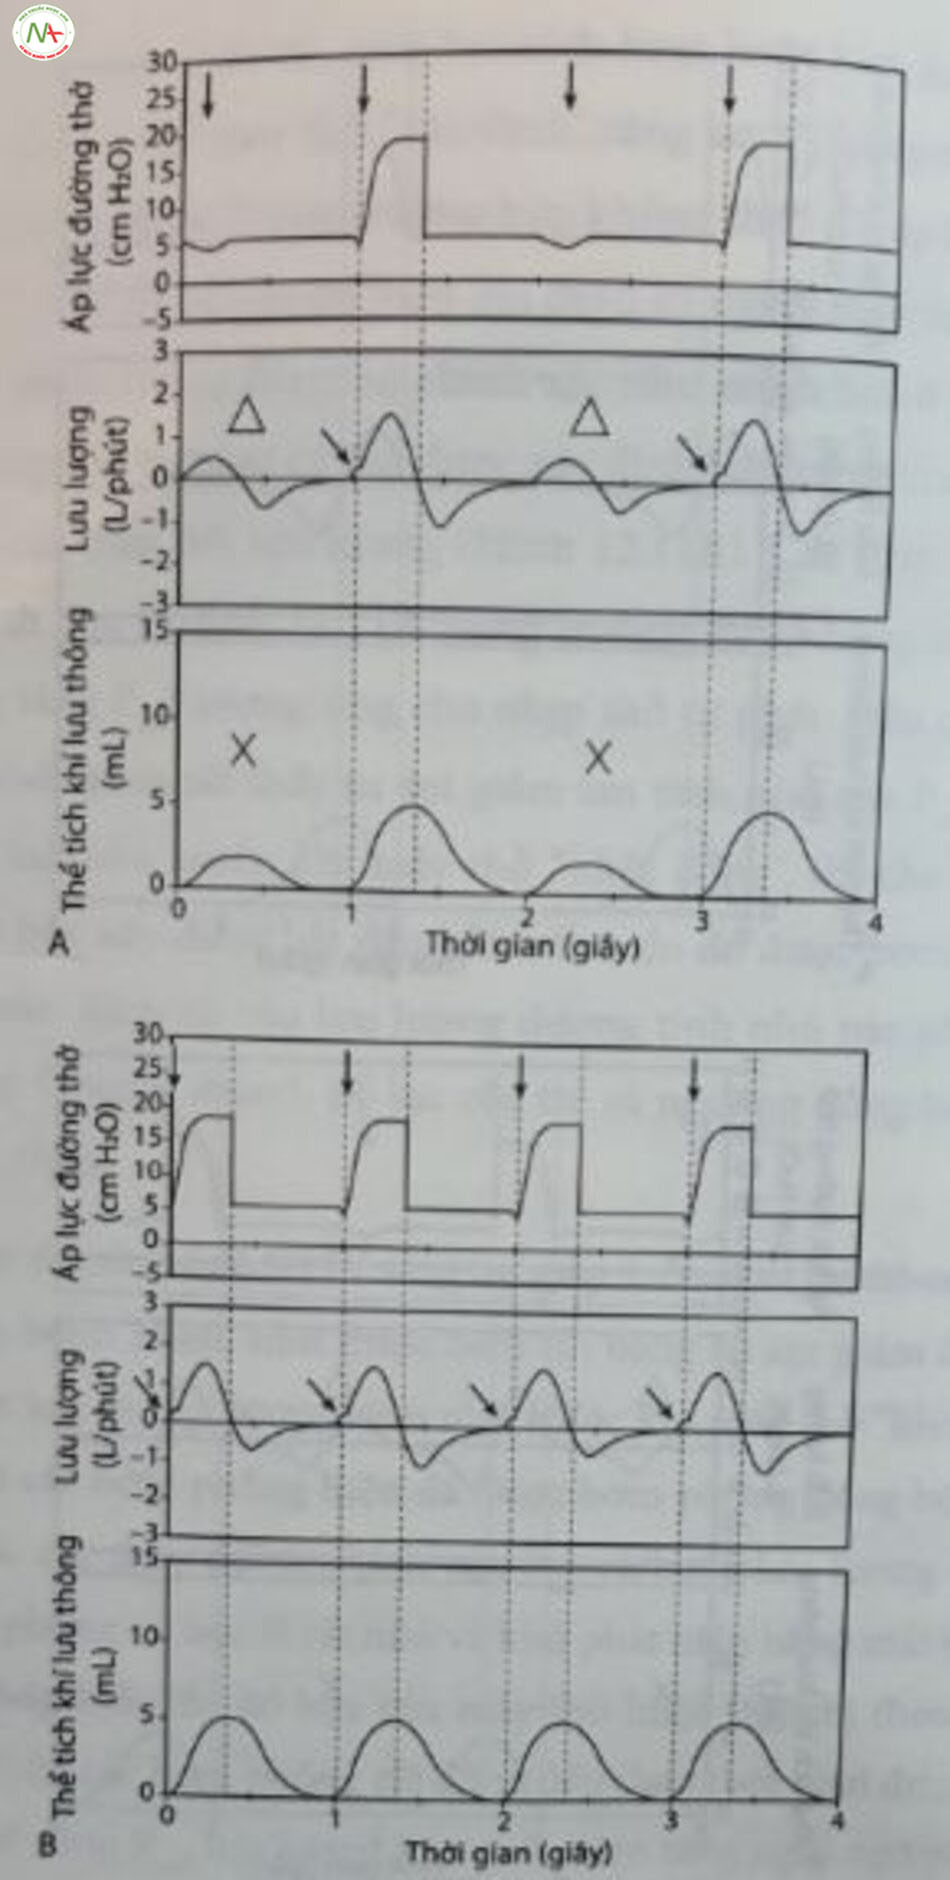 Hình 12.12 Kiểm tra đồng bộ hóa. Thông khí bắt buộc ngất quang đồng bộ (SIMV) so với trợ giúp-kiểm soát (AC). (A) SIMV (tần số: 30 lần/phút; thời gian hít vào [T]: 0,3 giây). Lưu ý. Sự hiện diện của nhịp thở tự phát (60 lần/phút) được biểu thị bằng sự giảm nhẹ áp lực đường thở (P..) (+) cũng như lưu lượng hít vào và thở ra nhỏ (A), dẫn đến thể tích khí lưu thông nhỏ aw (X) giữa các bơm phòng cơ học. Lưu lượng hít vào tăng nhẹ trước khi các bơm phồng cổ học đẩy vào” và tăng lưu lượng thêm nữa (mũi tên ở hàng thứ hai). (B) A/C (T: 0,3 giay). Lưu Ý Nhịp thở tự phát được biểu thị bằng sự giảm nhẹ Phu (l) và sự gia tăng nhẹ lưu lượng hít insp vào trước khi bơm phòng cơ học “đẩy vào” và tăng lưu lượng thêm nữa (mũi tên ở hàng thứ hai). Mỗi nỗ lực kích hoạt một bơm phòng cơ học đều dẫn đến tàn số 60 làn/phút.